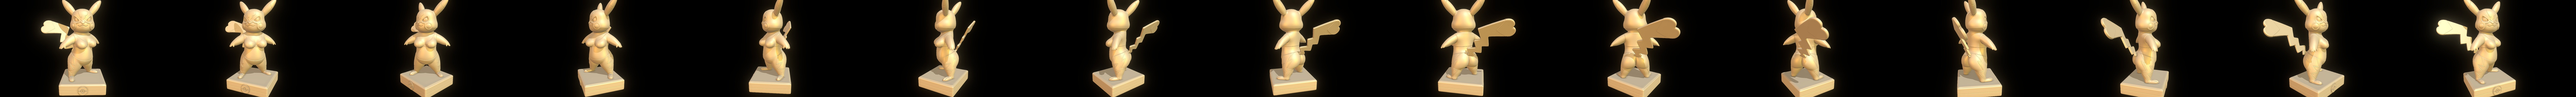 3D file Pikachu Libre - Pokémon Go ♀️・3D printable model to download・Cults